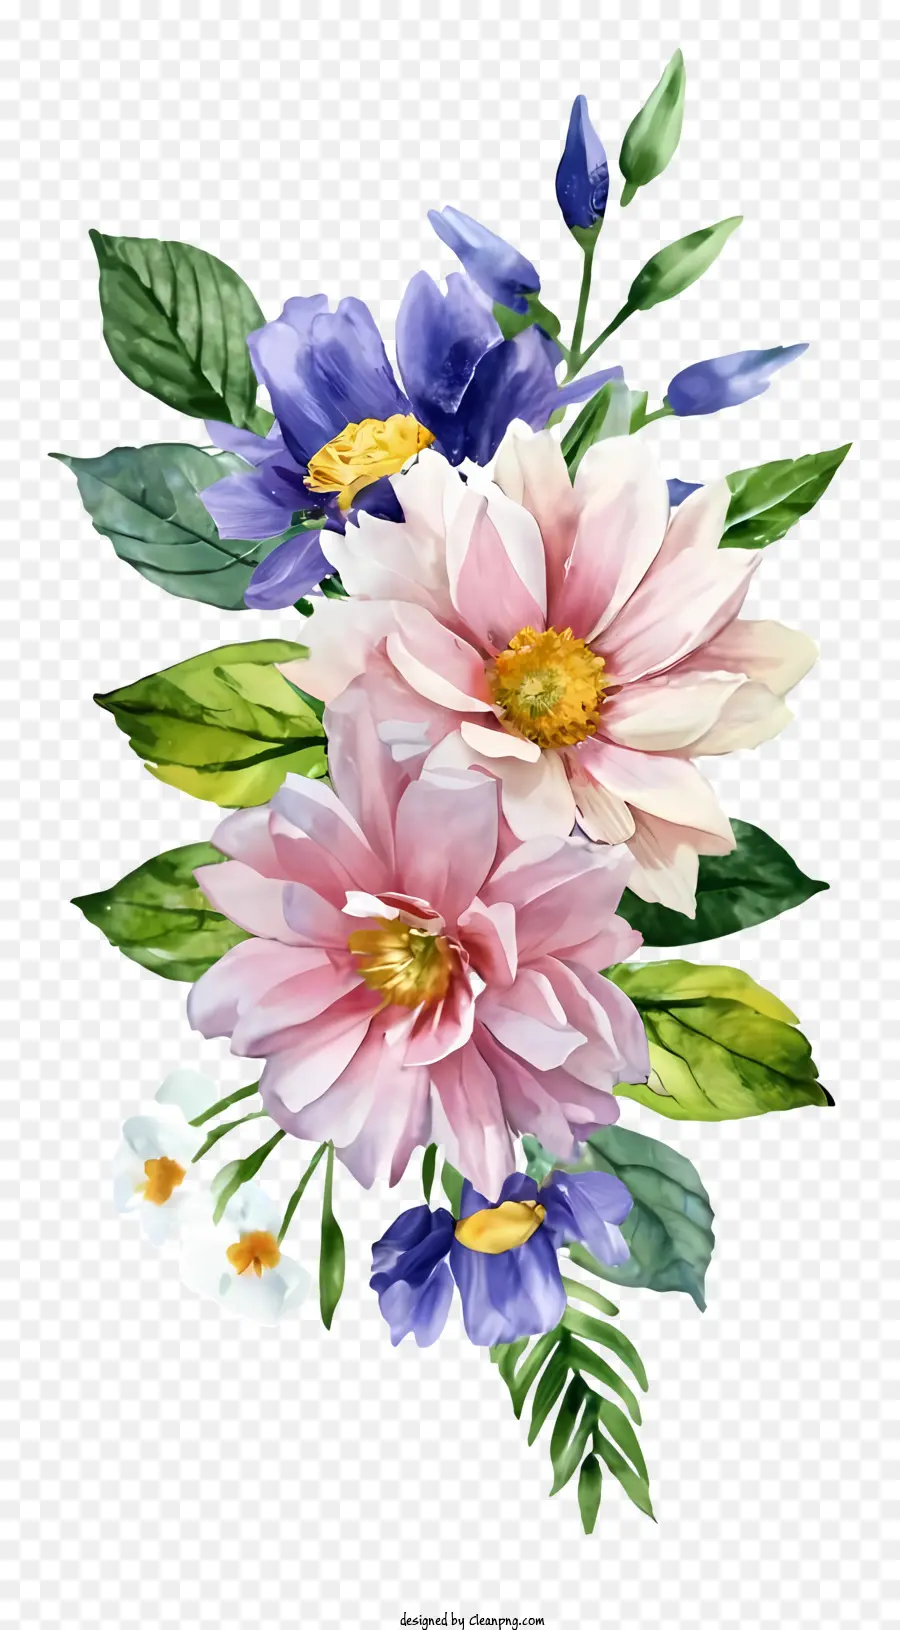 la disposizione dei fiori - La disposizione floreale ad acquerello vibrante significa bellezza naturale